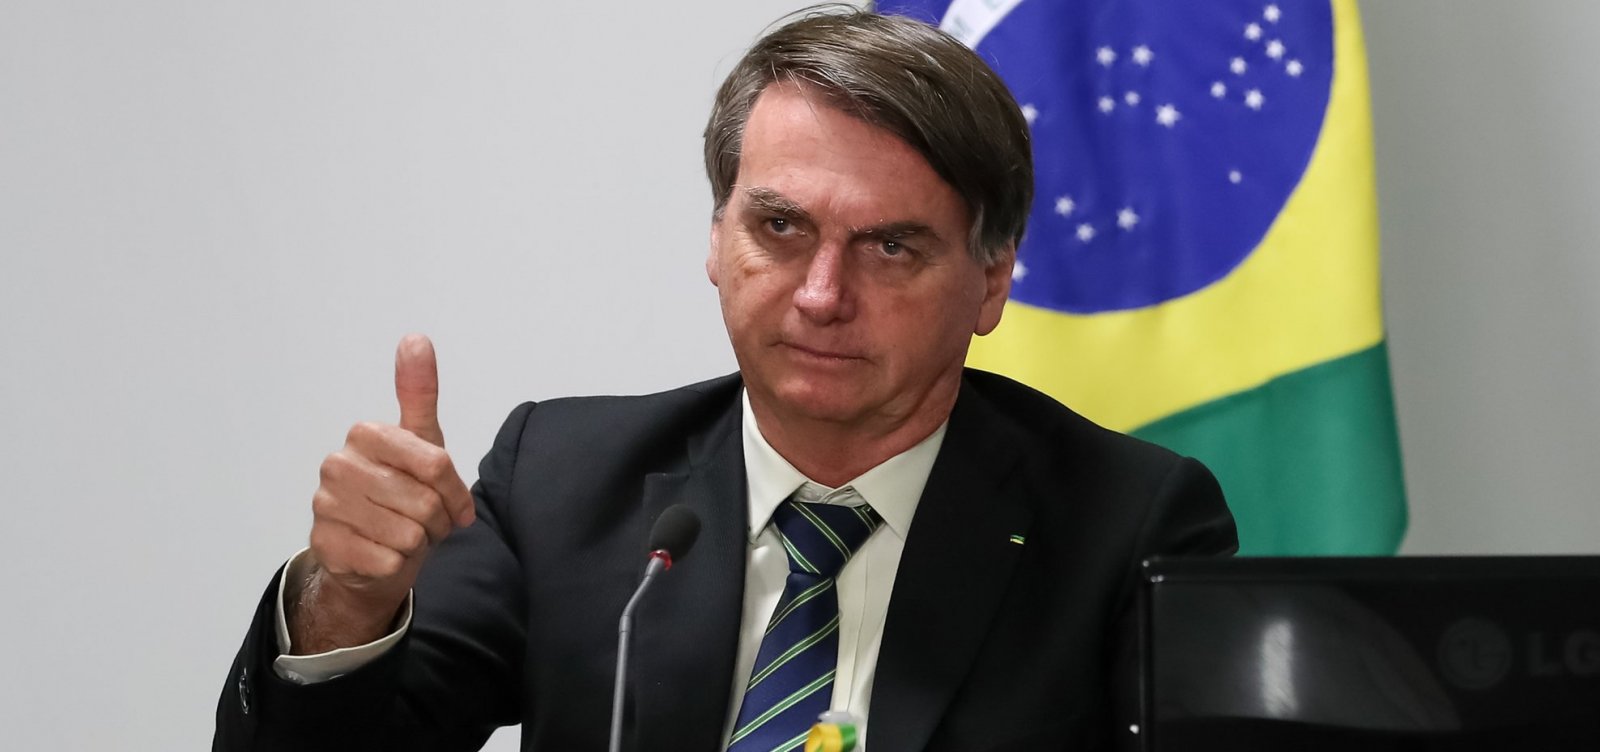 Índice de reprovação da aproximação de Bolsonaro com Centrão chega a 67%